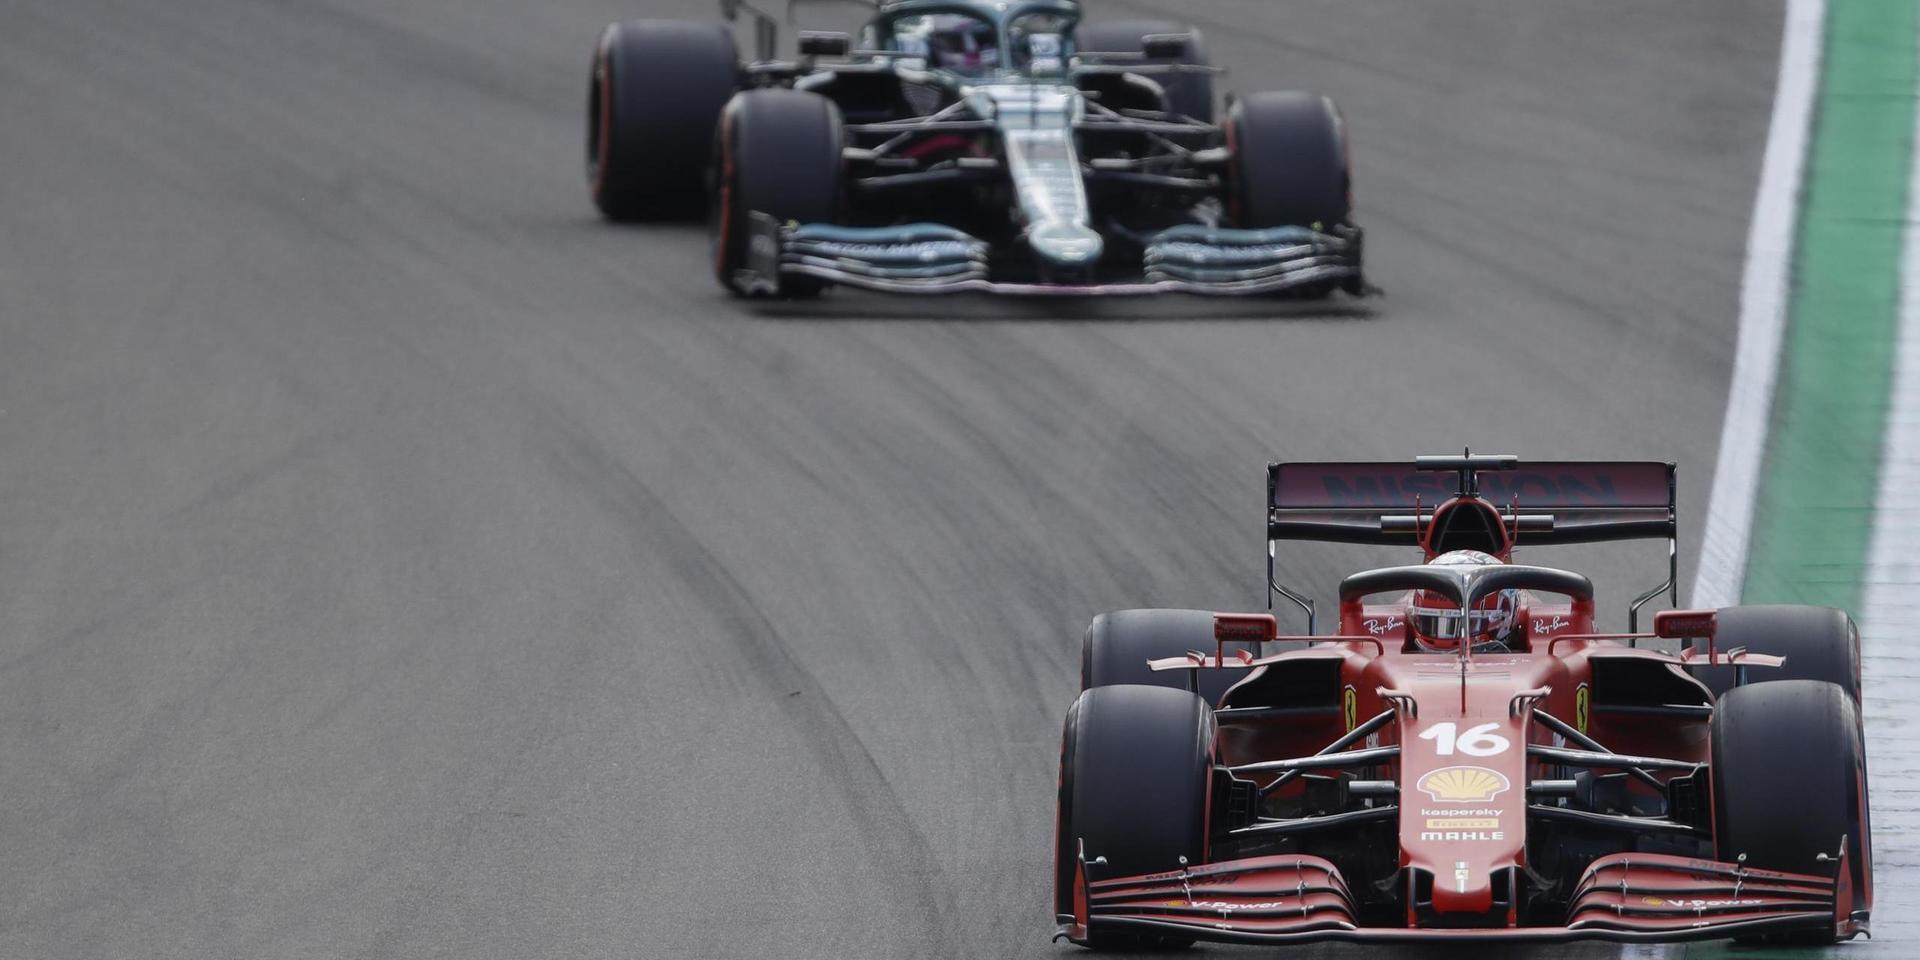 Charles Leclerc, Sebastian Vettel och de andra förarna i formel 1 får köra en tävling i Miami nästa år.